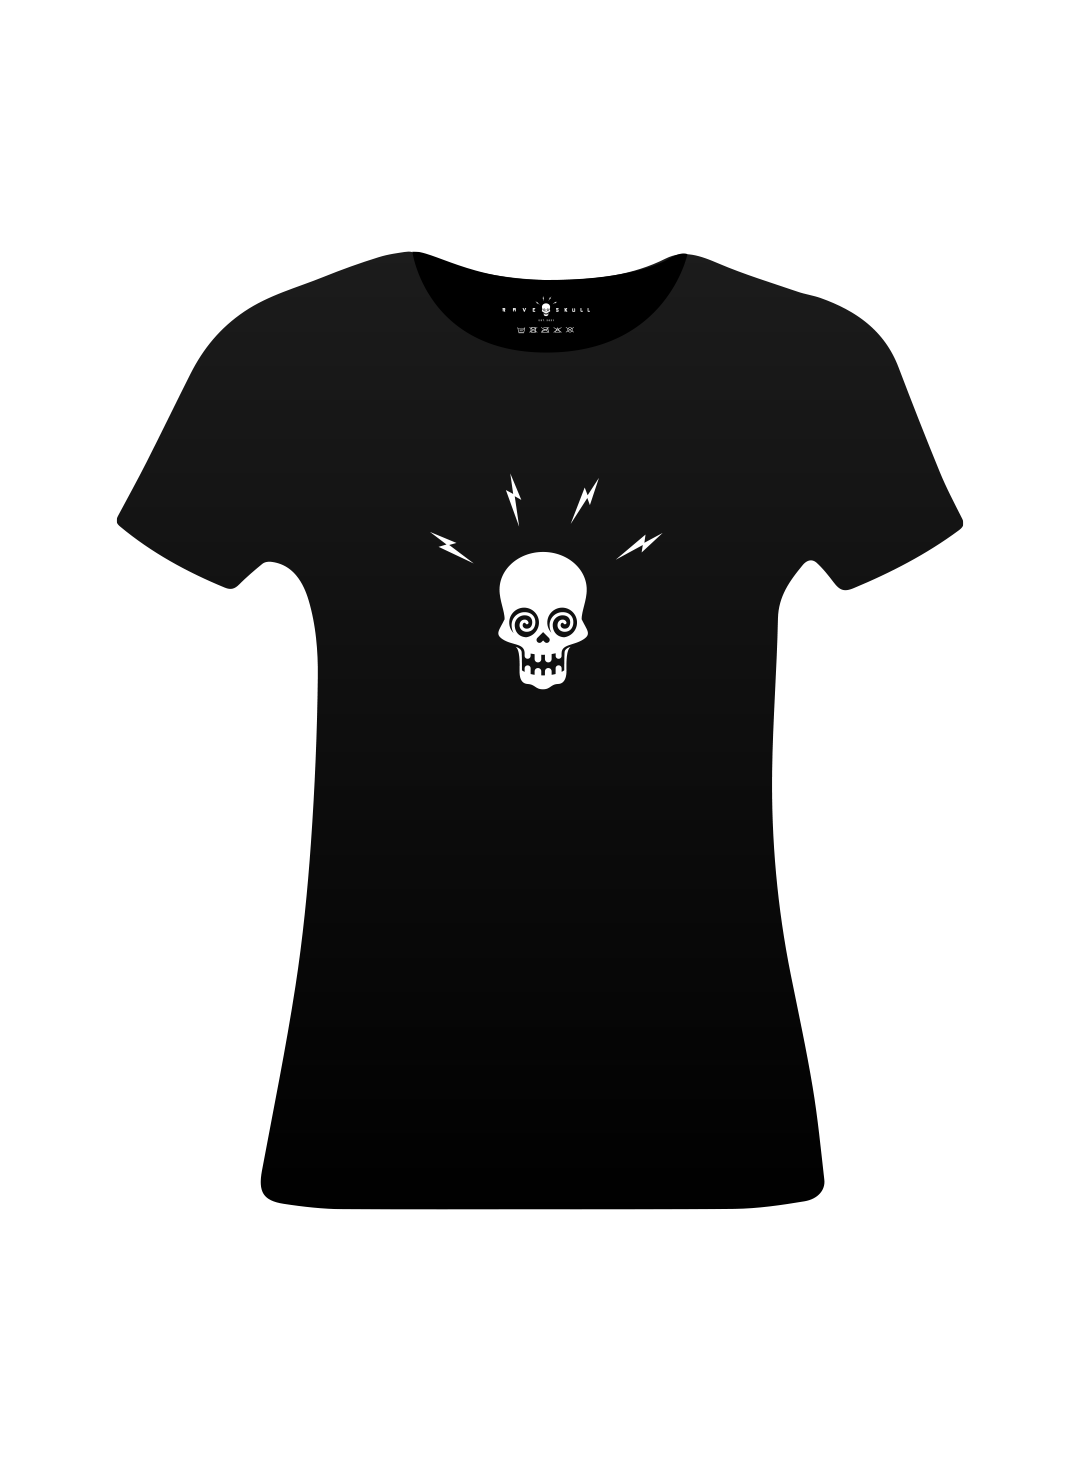 Skull Brand T-Shirt - RaveSkull